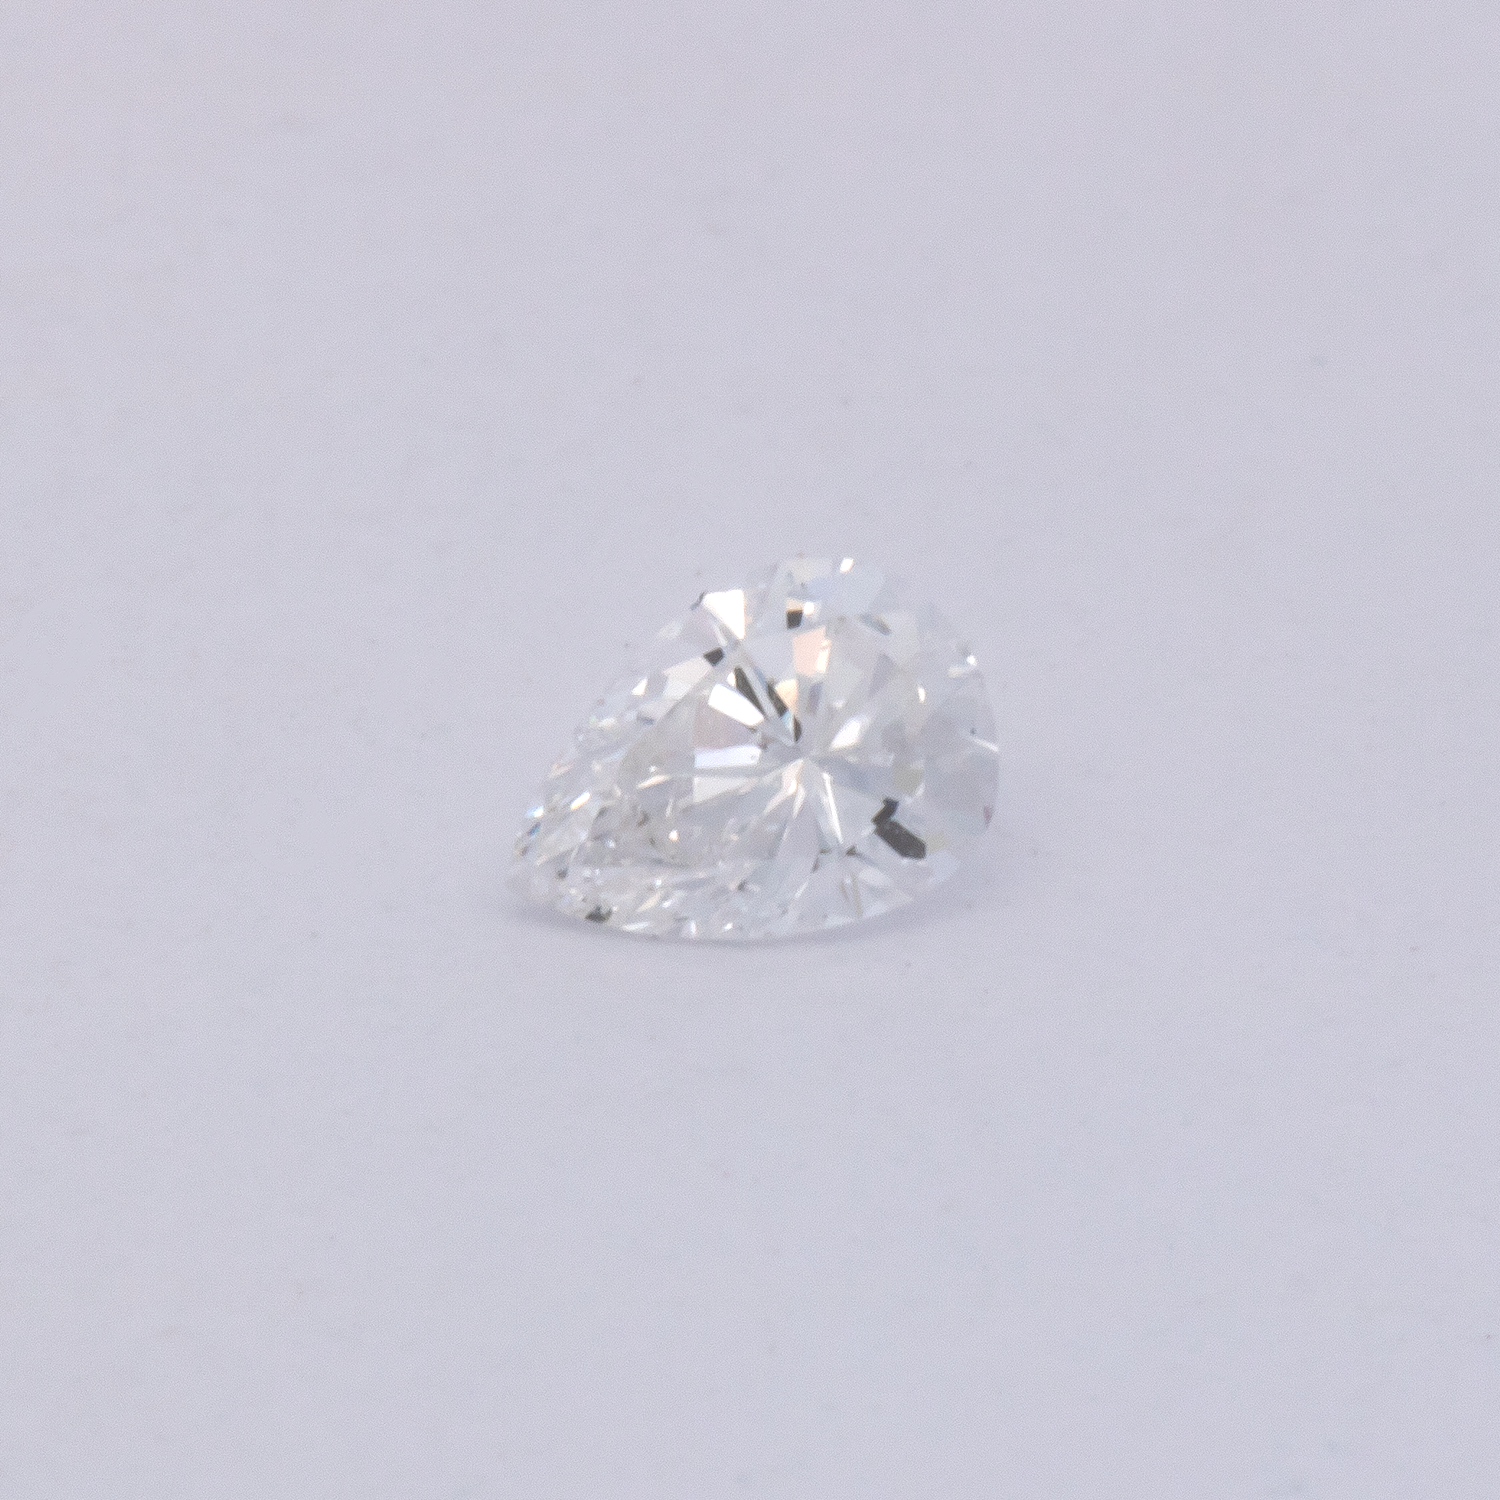 Diamant - fein weiß, birnform, 3x2.2 mm, 0.06 cts, Nr. DT1035